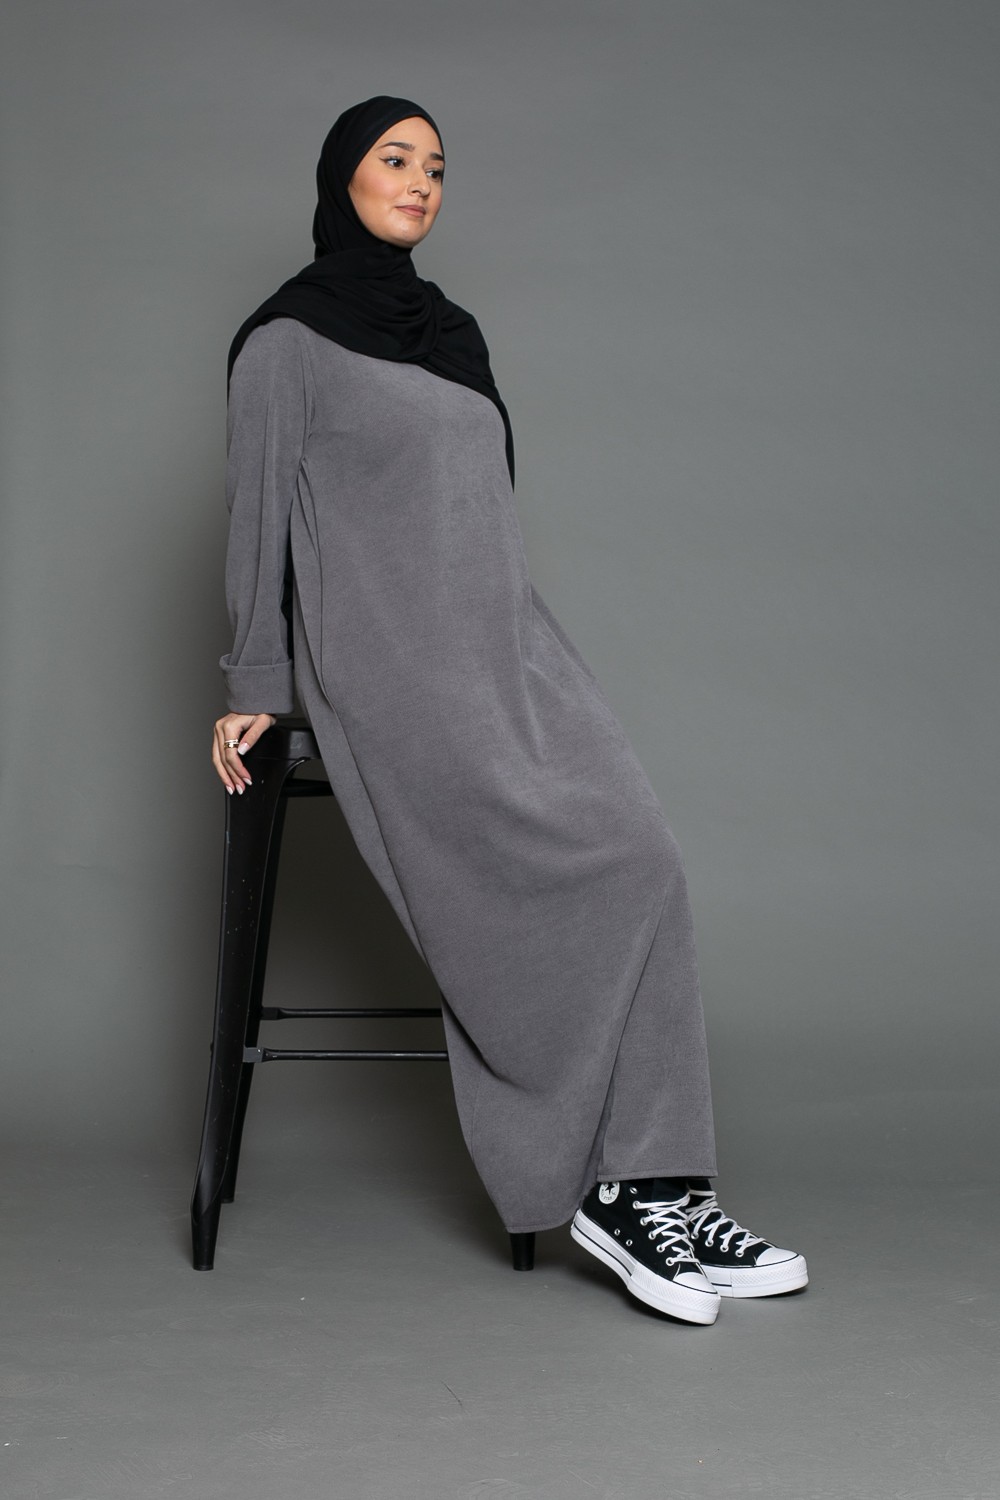 Robe velours grise pour automne hiver. Boutique pas cher pour femme modeste